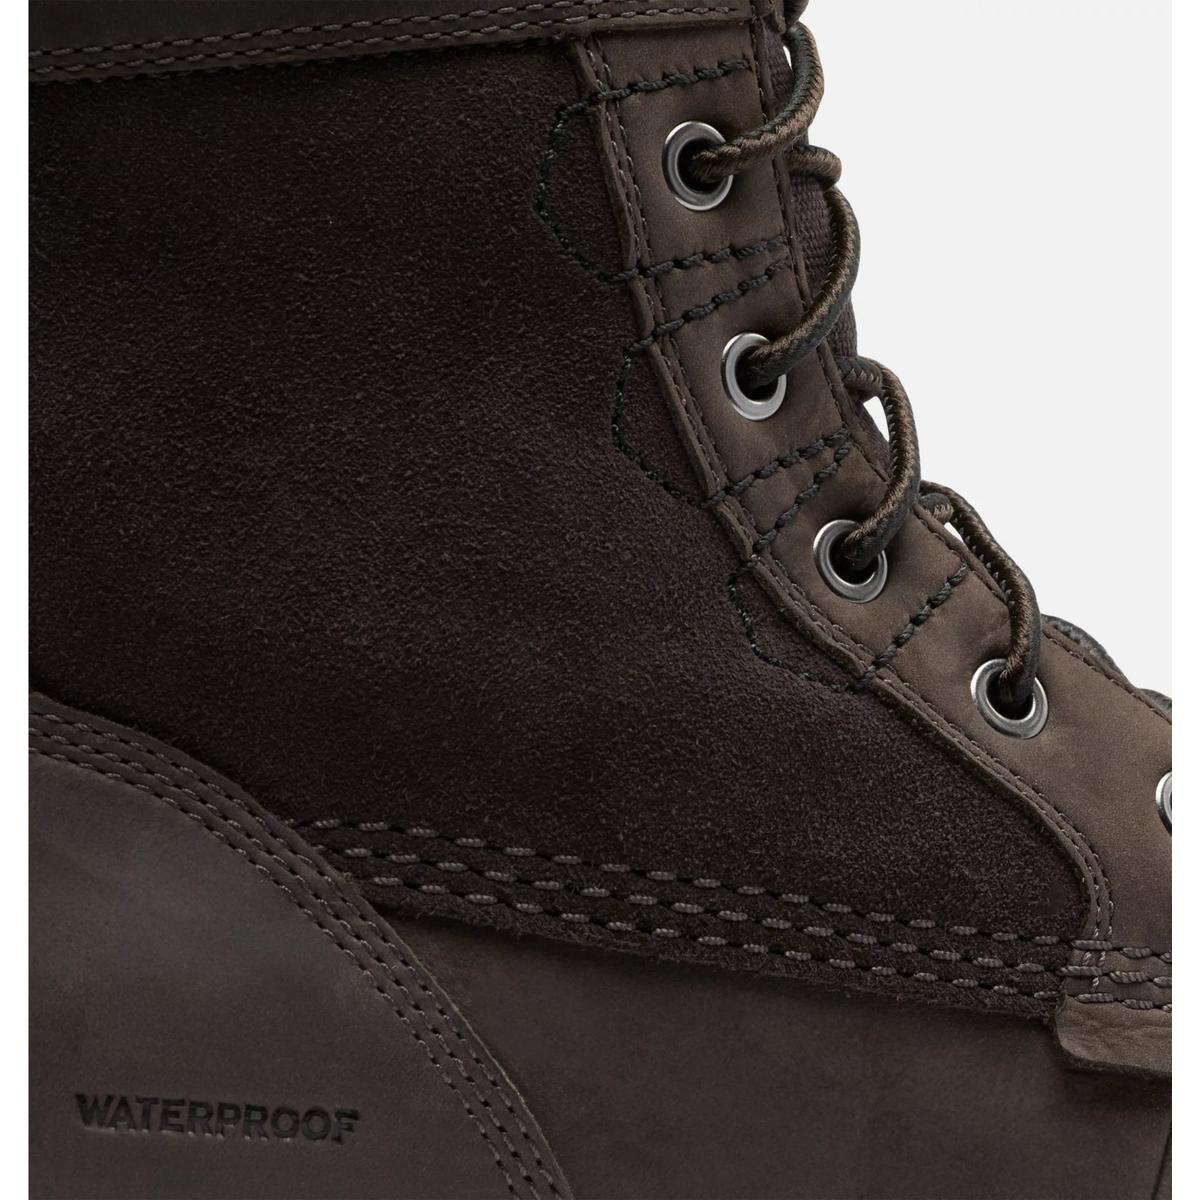 Sorel Men's Carson Storm Waterproof Winter Boots - Dark Brown